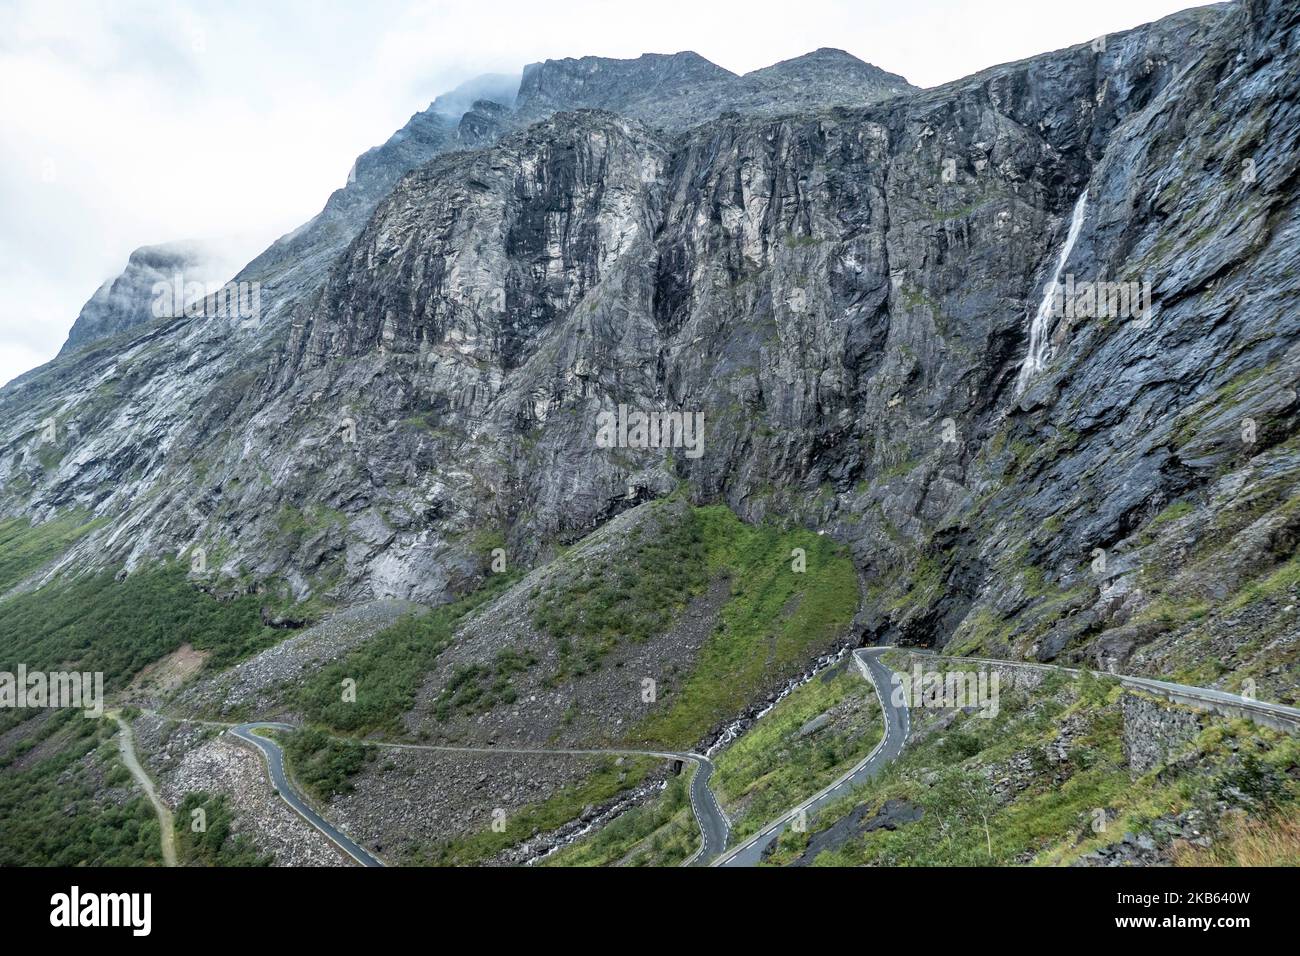 Célèbre Serpentine Scenic Mountain Road Trollstigen ou Trollstigveien, le Trollpath, une route de montagne avec des cascades dans la municipalité de Rauma, More og Romsdal comté, Norvège. La route fait partie de la route 63 du comté de Norvège, reliant Andalsnes au fjord de Valldal et Geiranger, Trollstigen fait partie de la route panoramique norvégienne Geiranger - Trollstigen. La route n'est ouverte que pendant la saison estivale, elle est étroite avec des virages serrés, montant de 850 mètres, avec une grande cascade, Stigfossen d'une hauteur de 240 mètres et un pont, centre de visiteurs pour les touristes, plate-forme d'observation des visiteurs. La vue du Scandi Banque D'Images